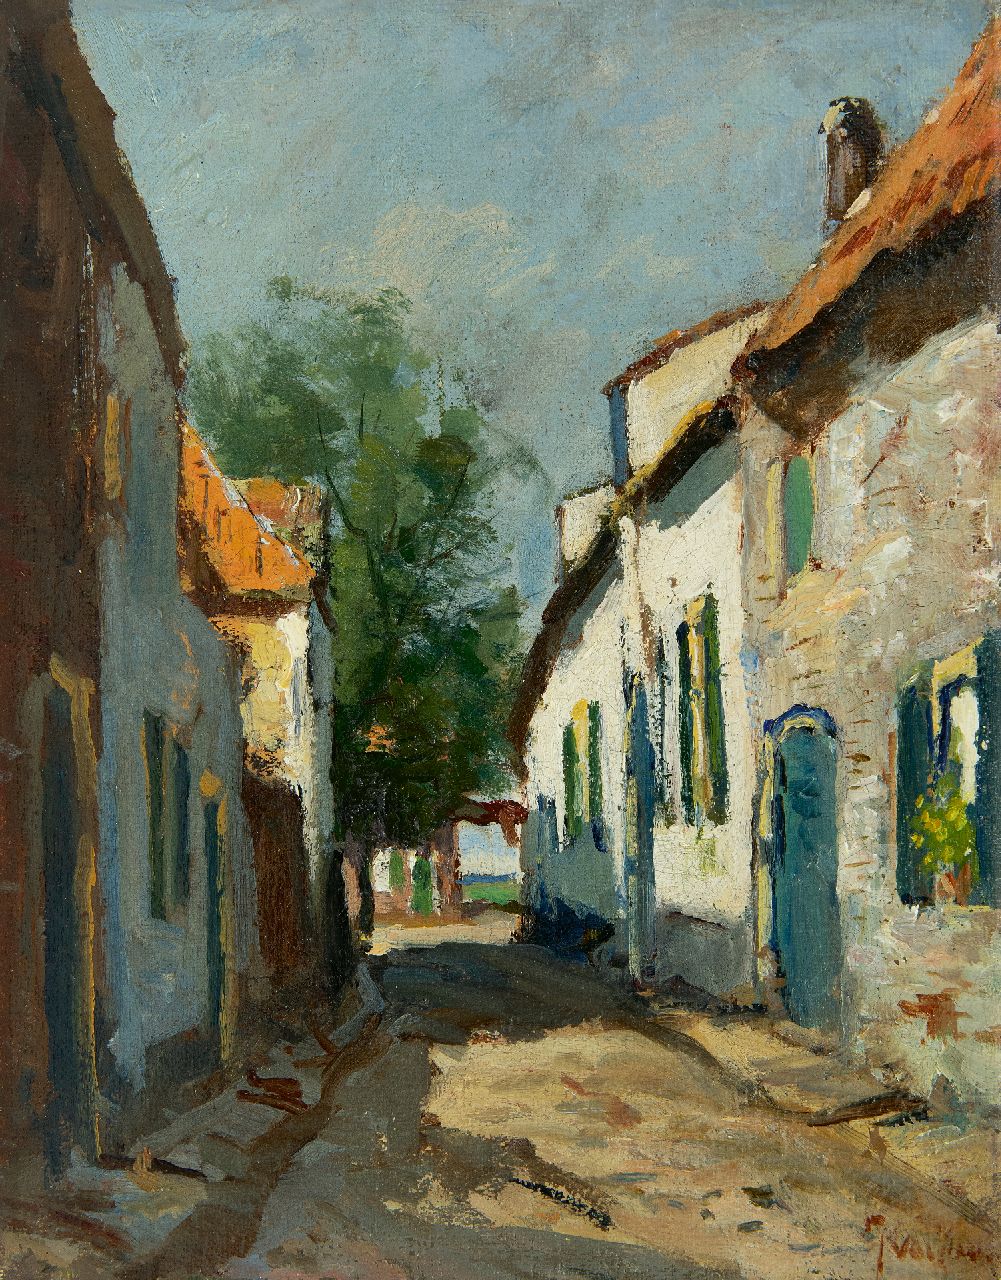 Vuuren J. van | Jan van Vuuren, Village street, oil on canvas 25.5 x 20.1 cm, signed l.r.